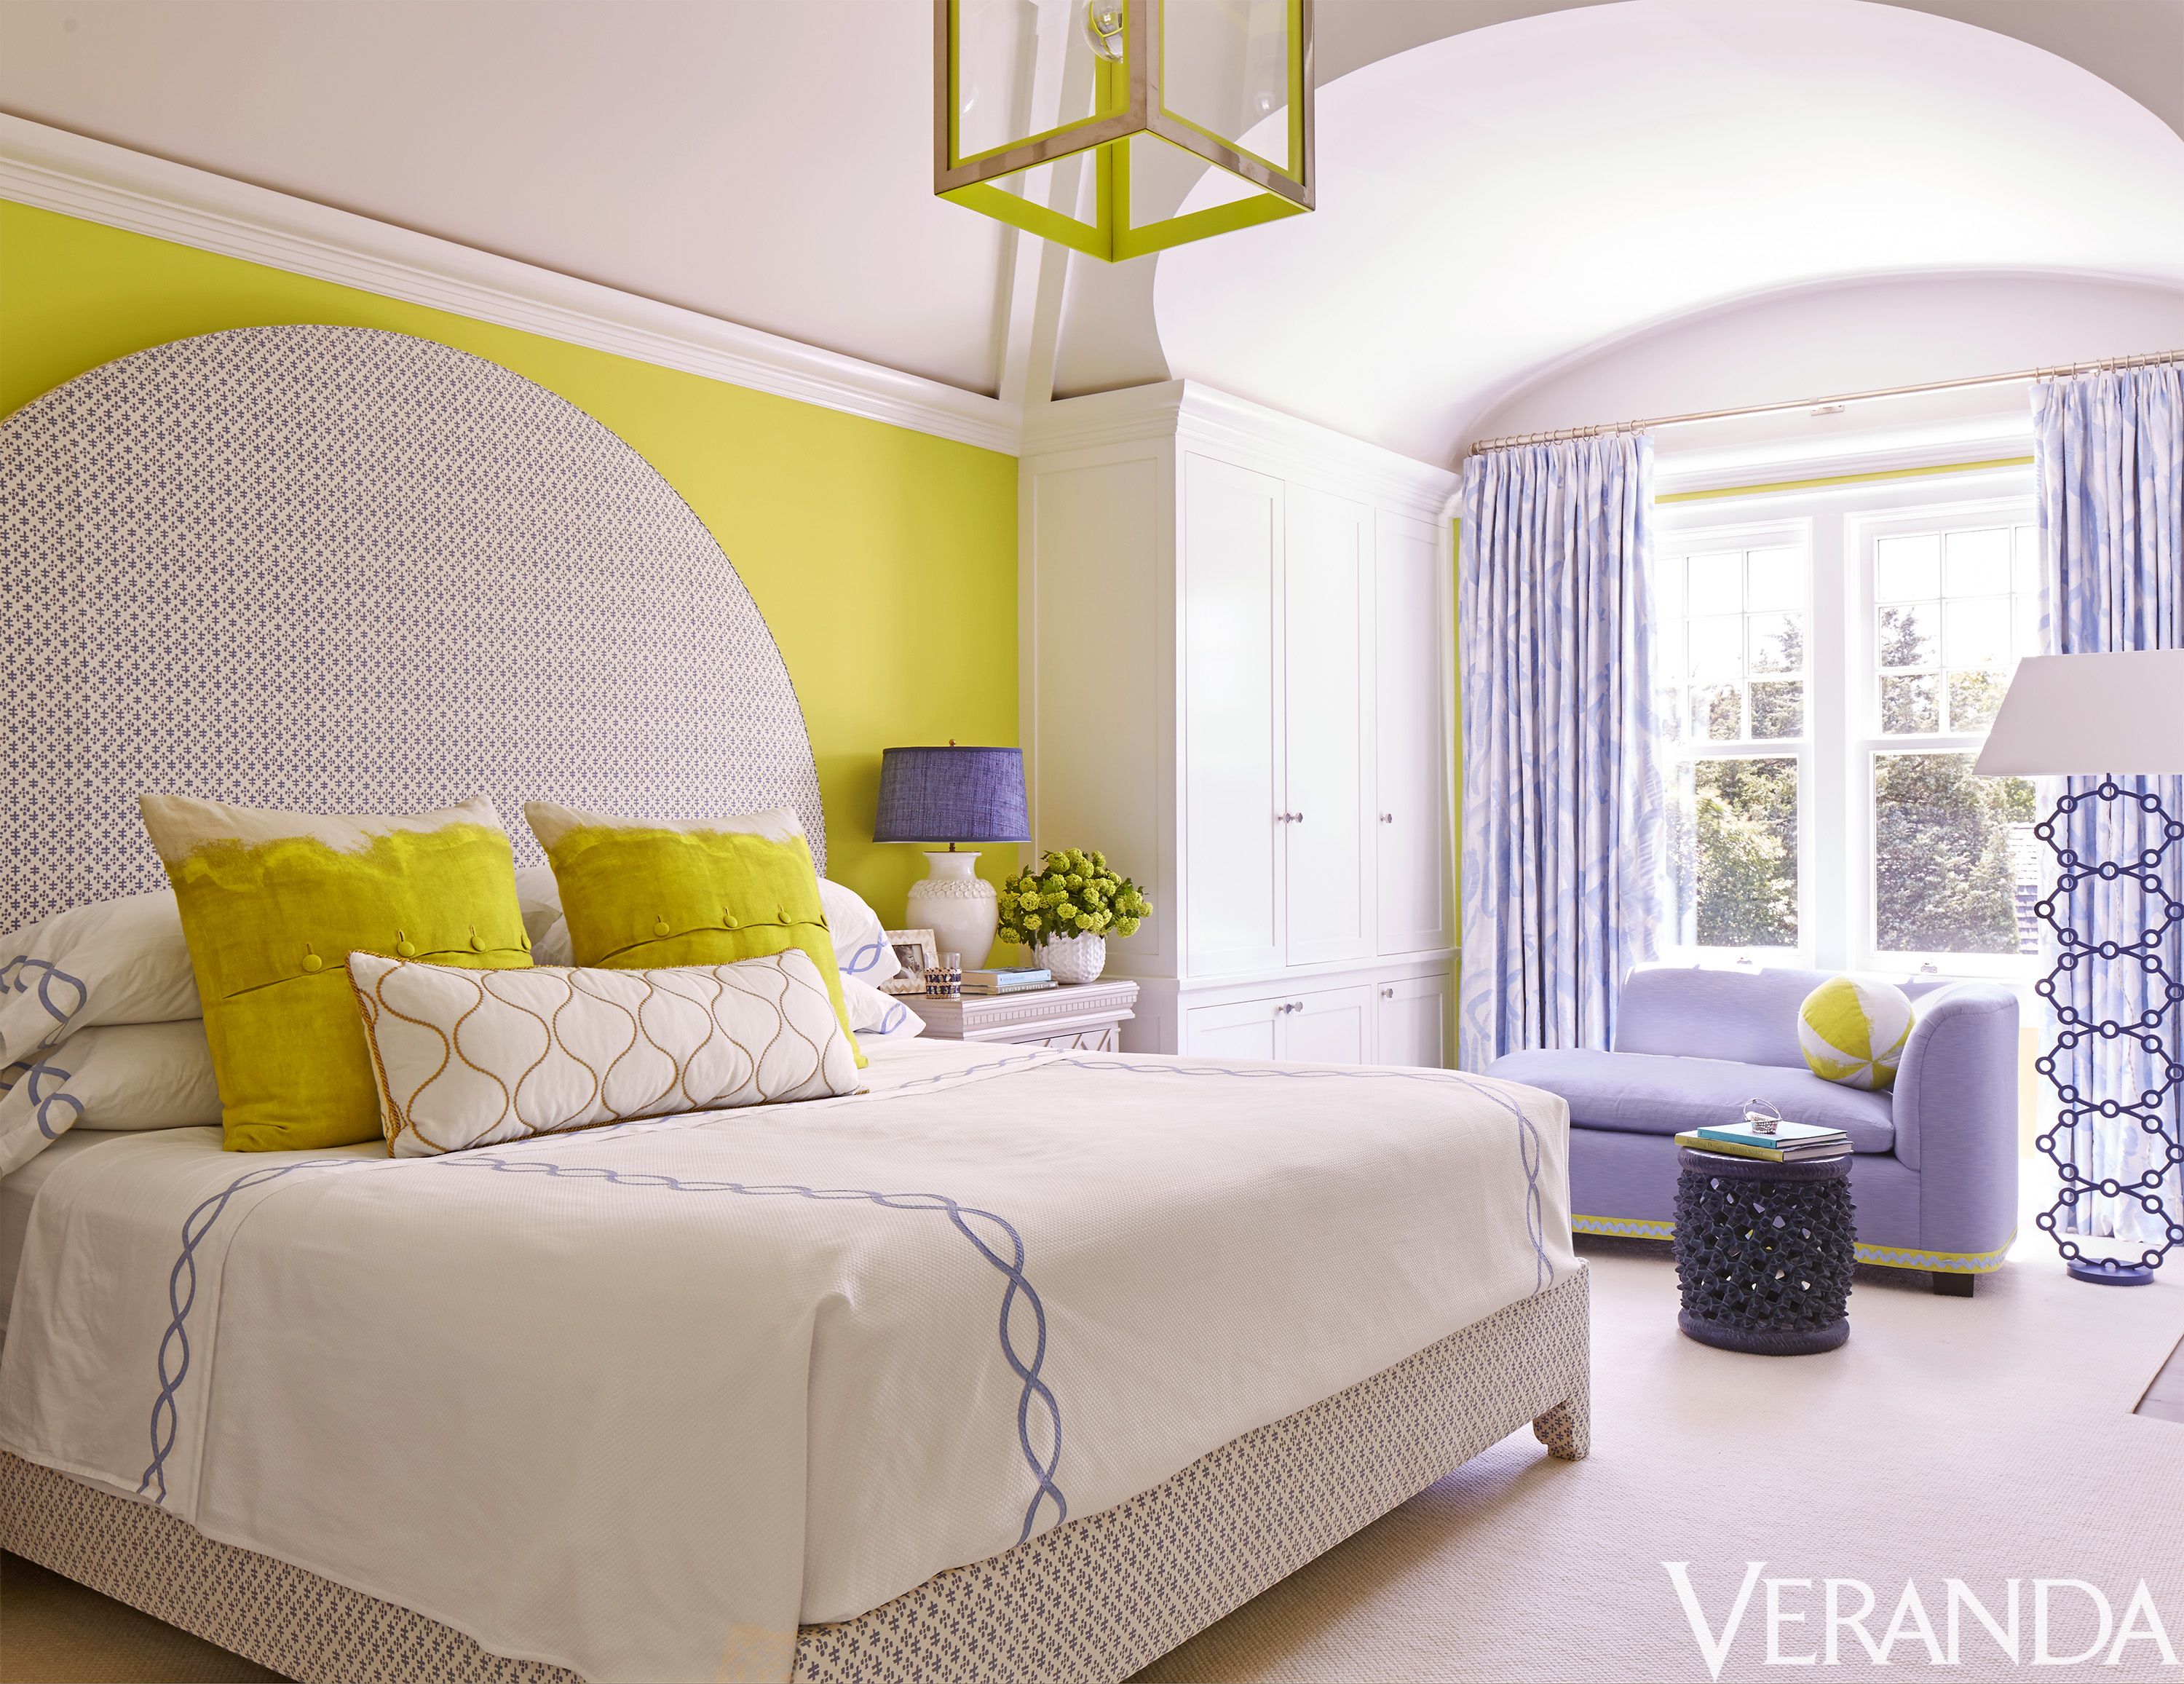 40 Best Bedroom Ideas Beautiful Bedroom Decorating Tips